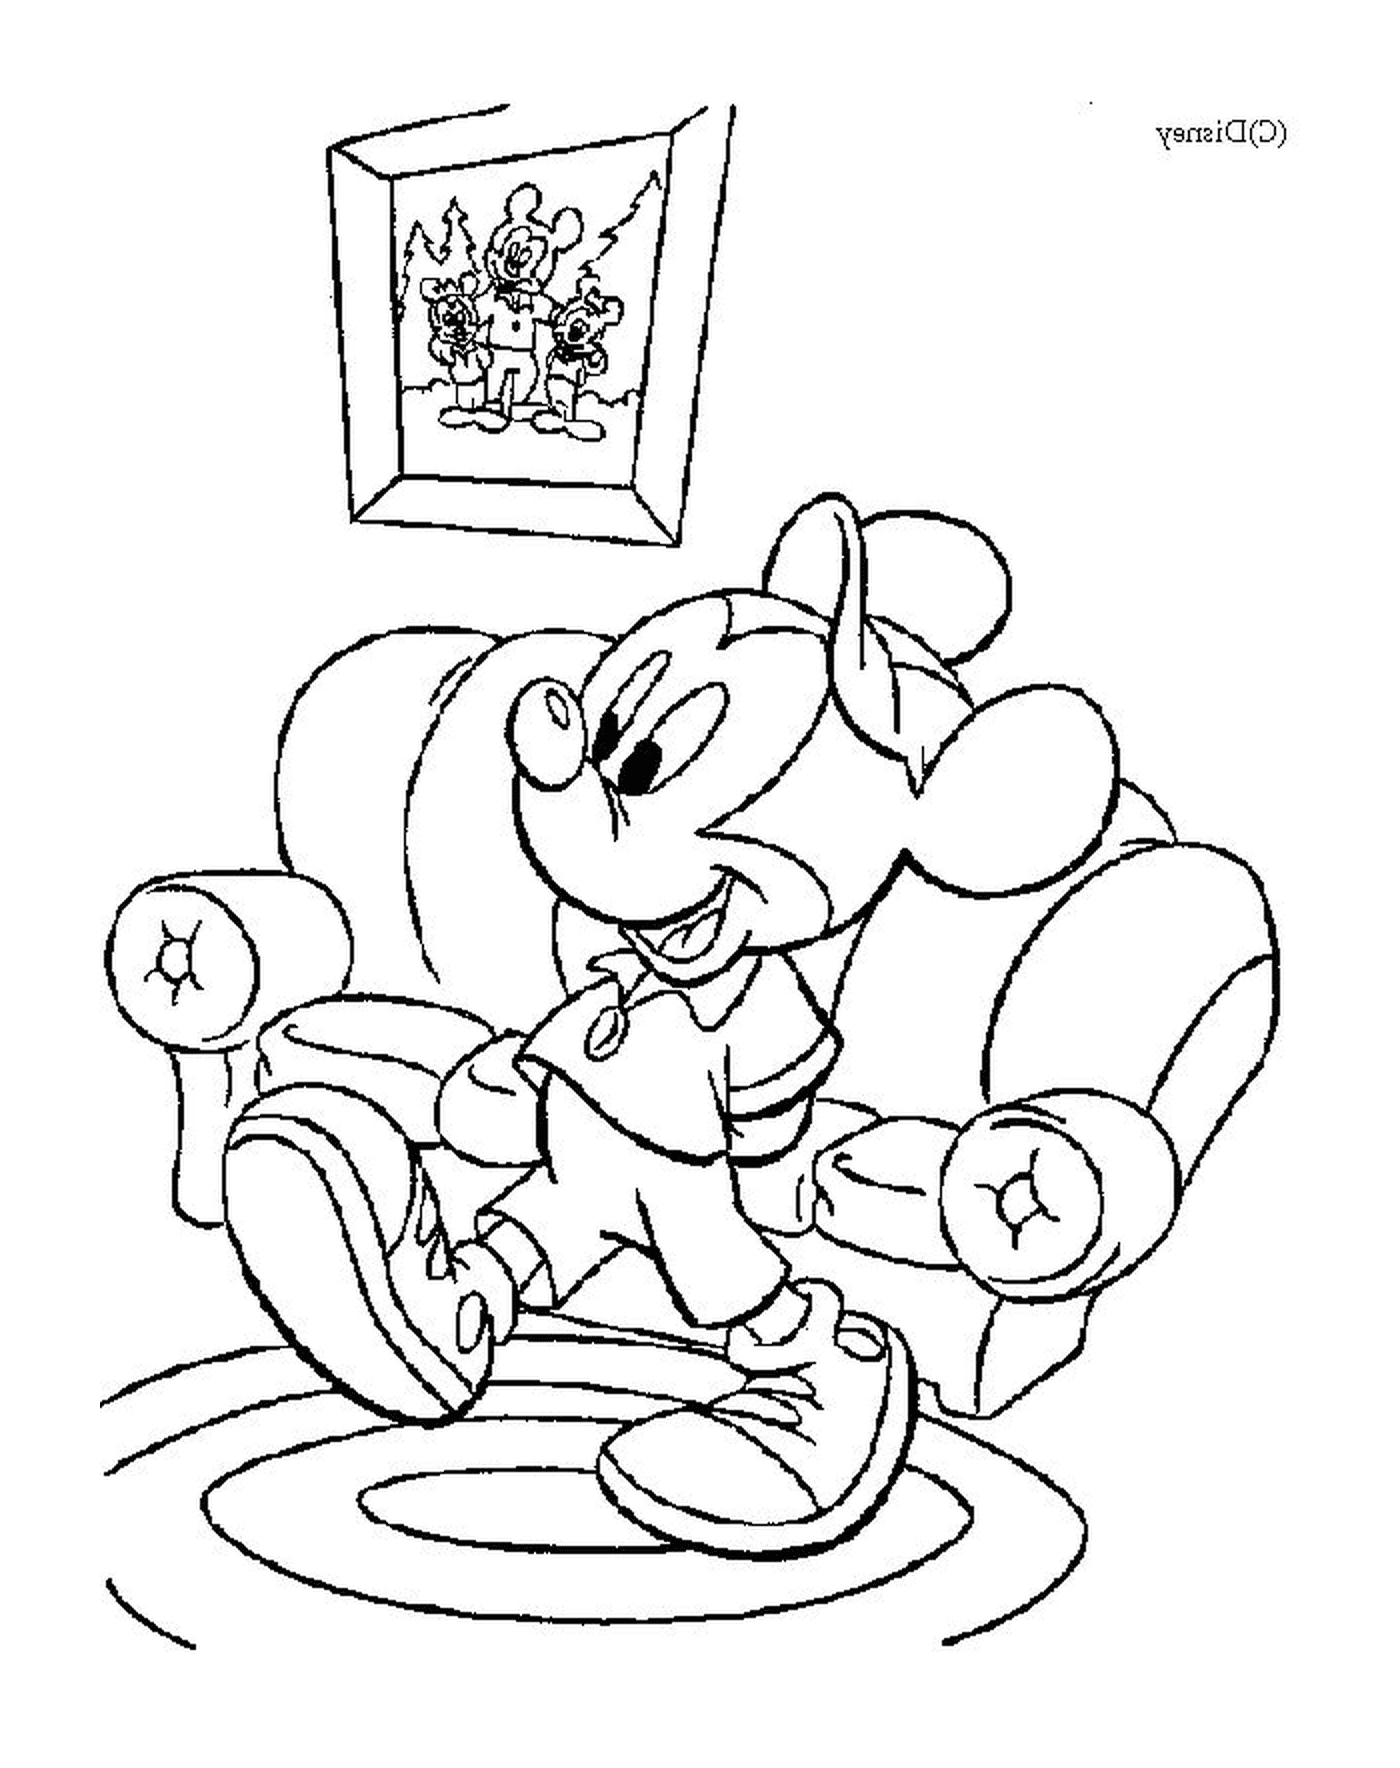  米老鼠坐在扶手椅上 